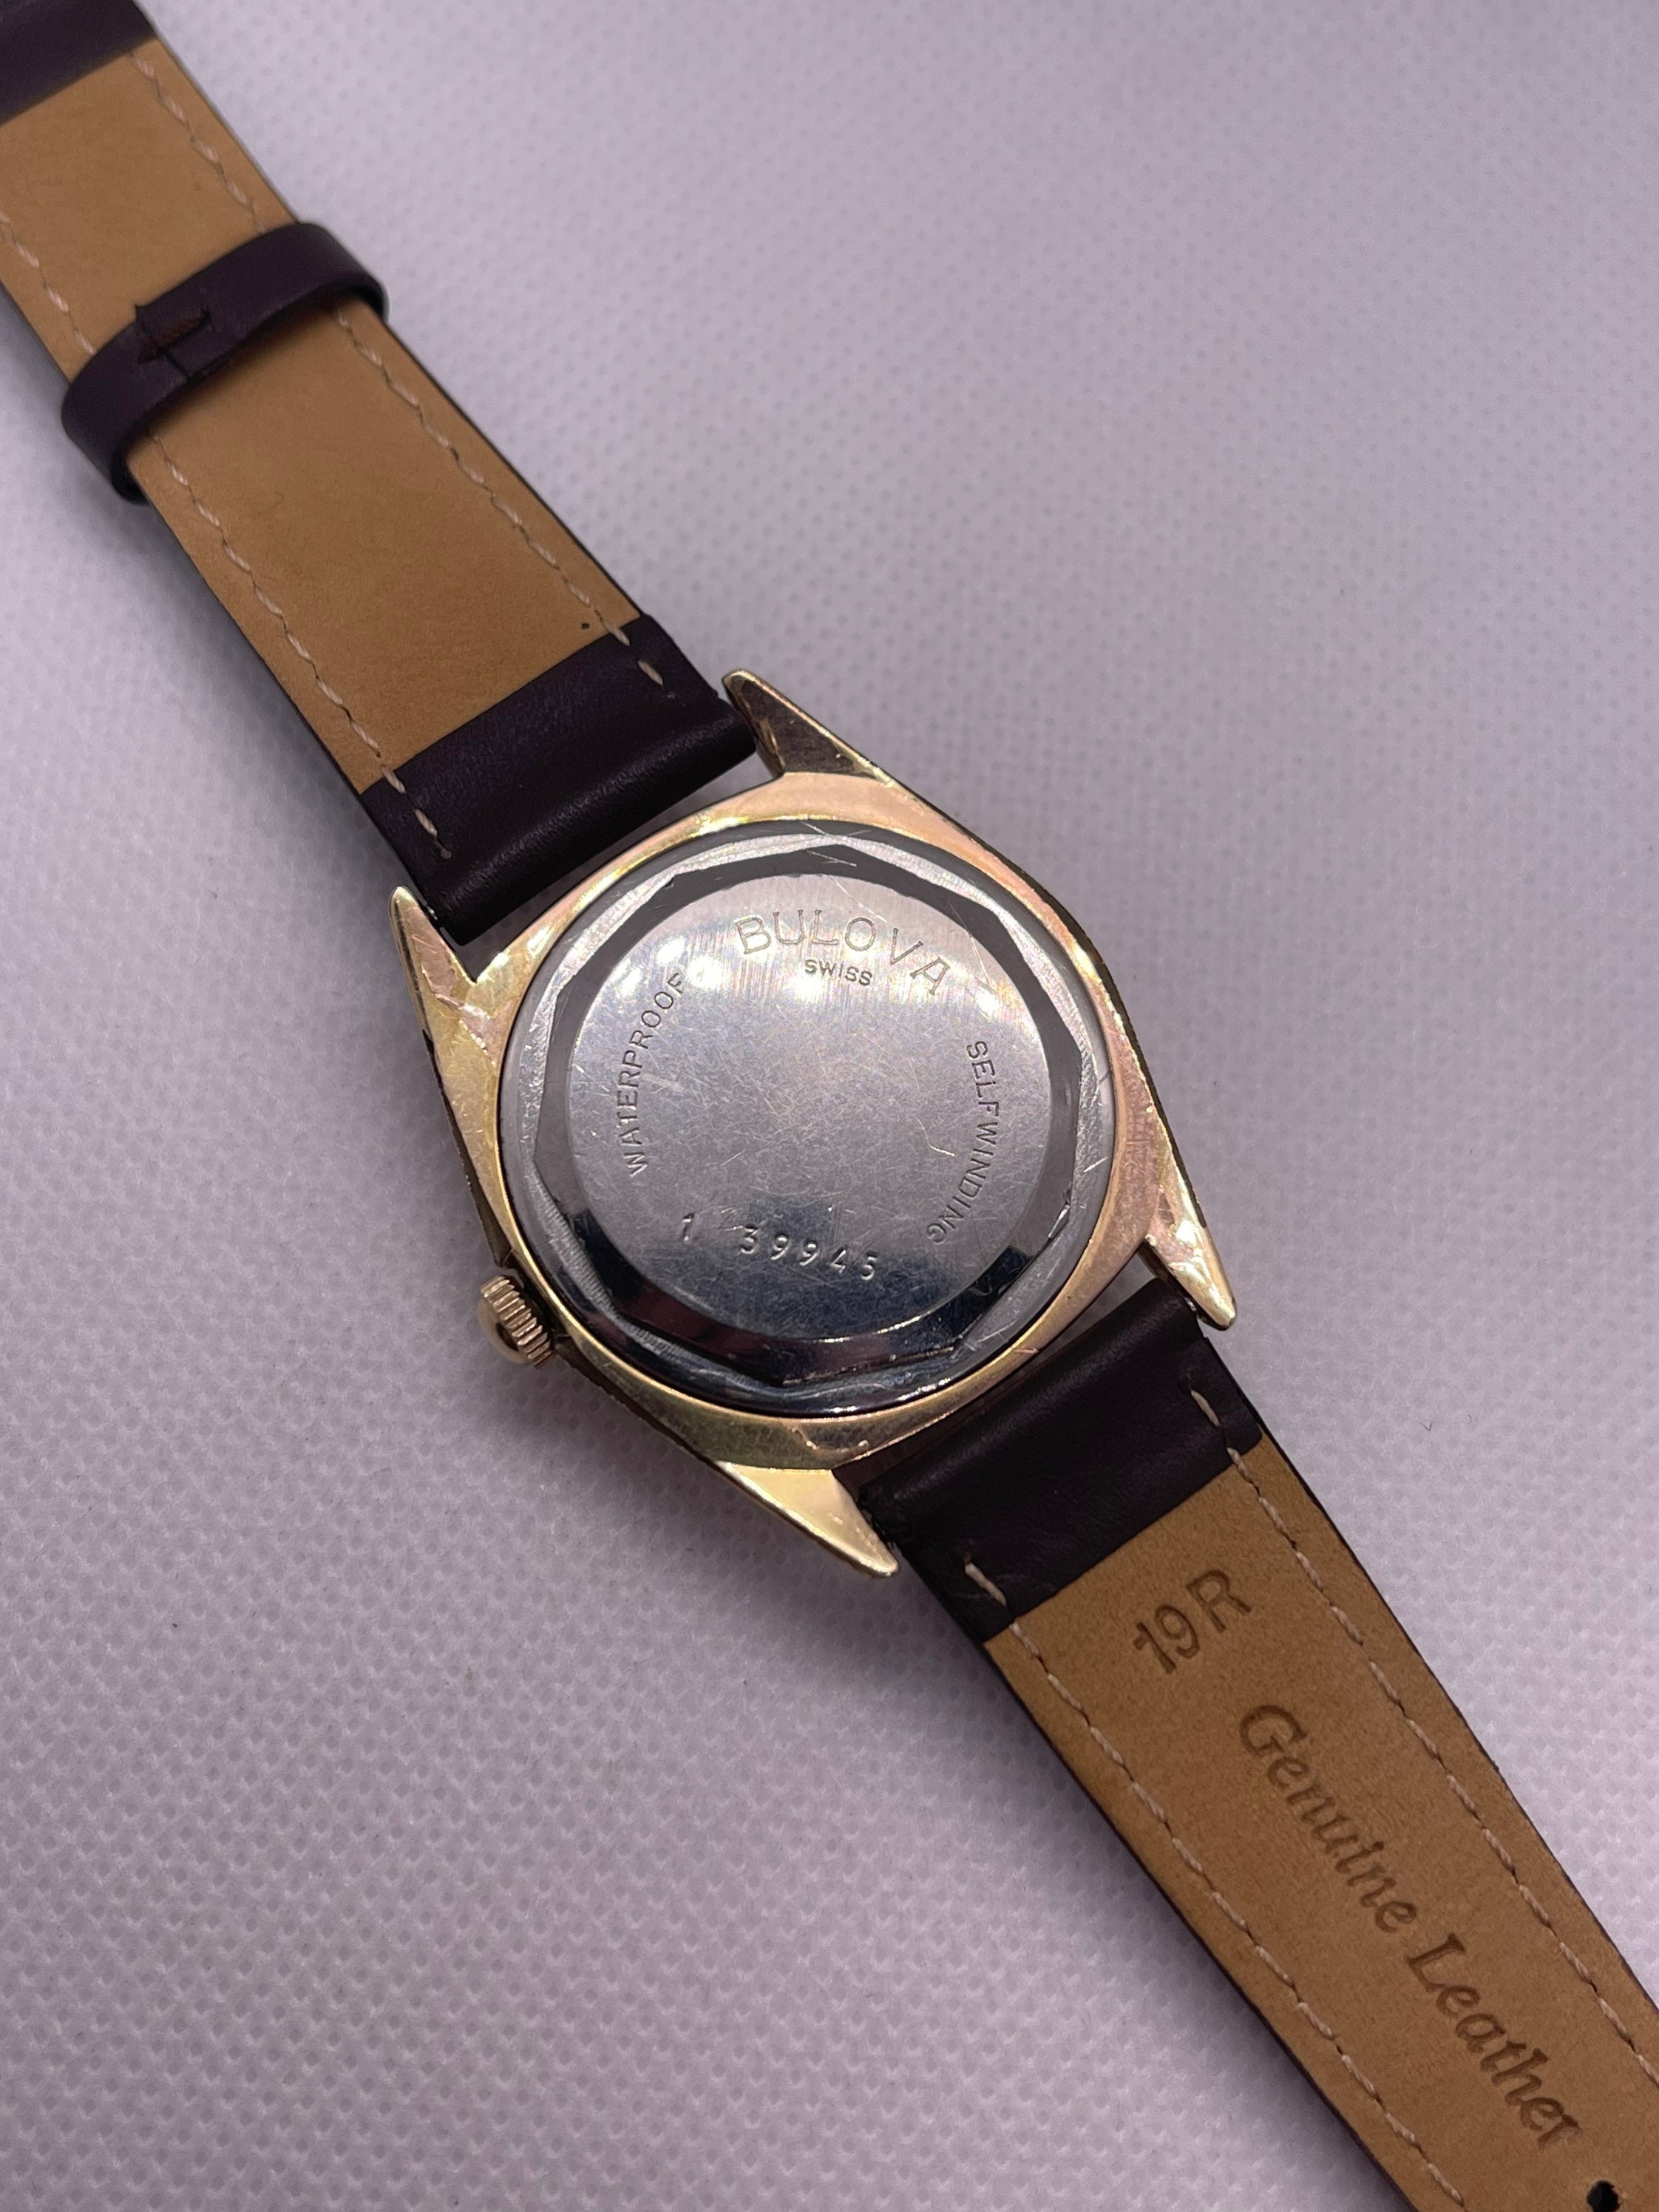 Vintage Bulova International Automatic Watch With Beautiful - Etsy